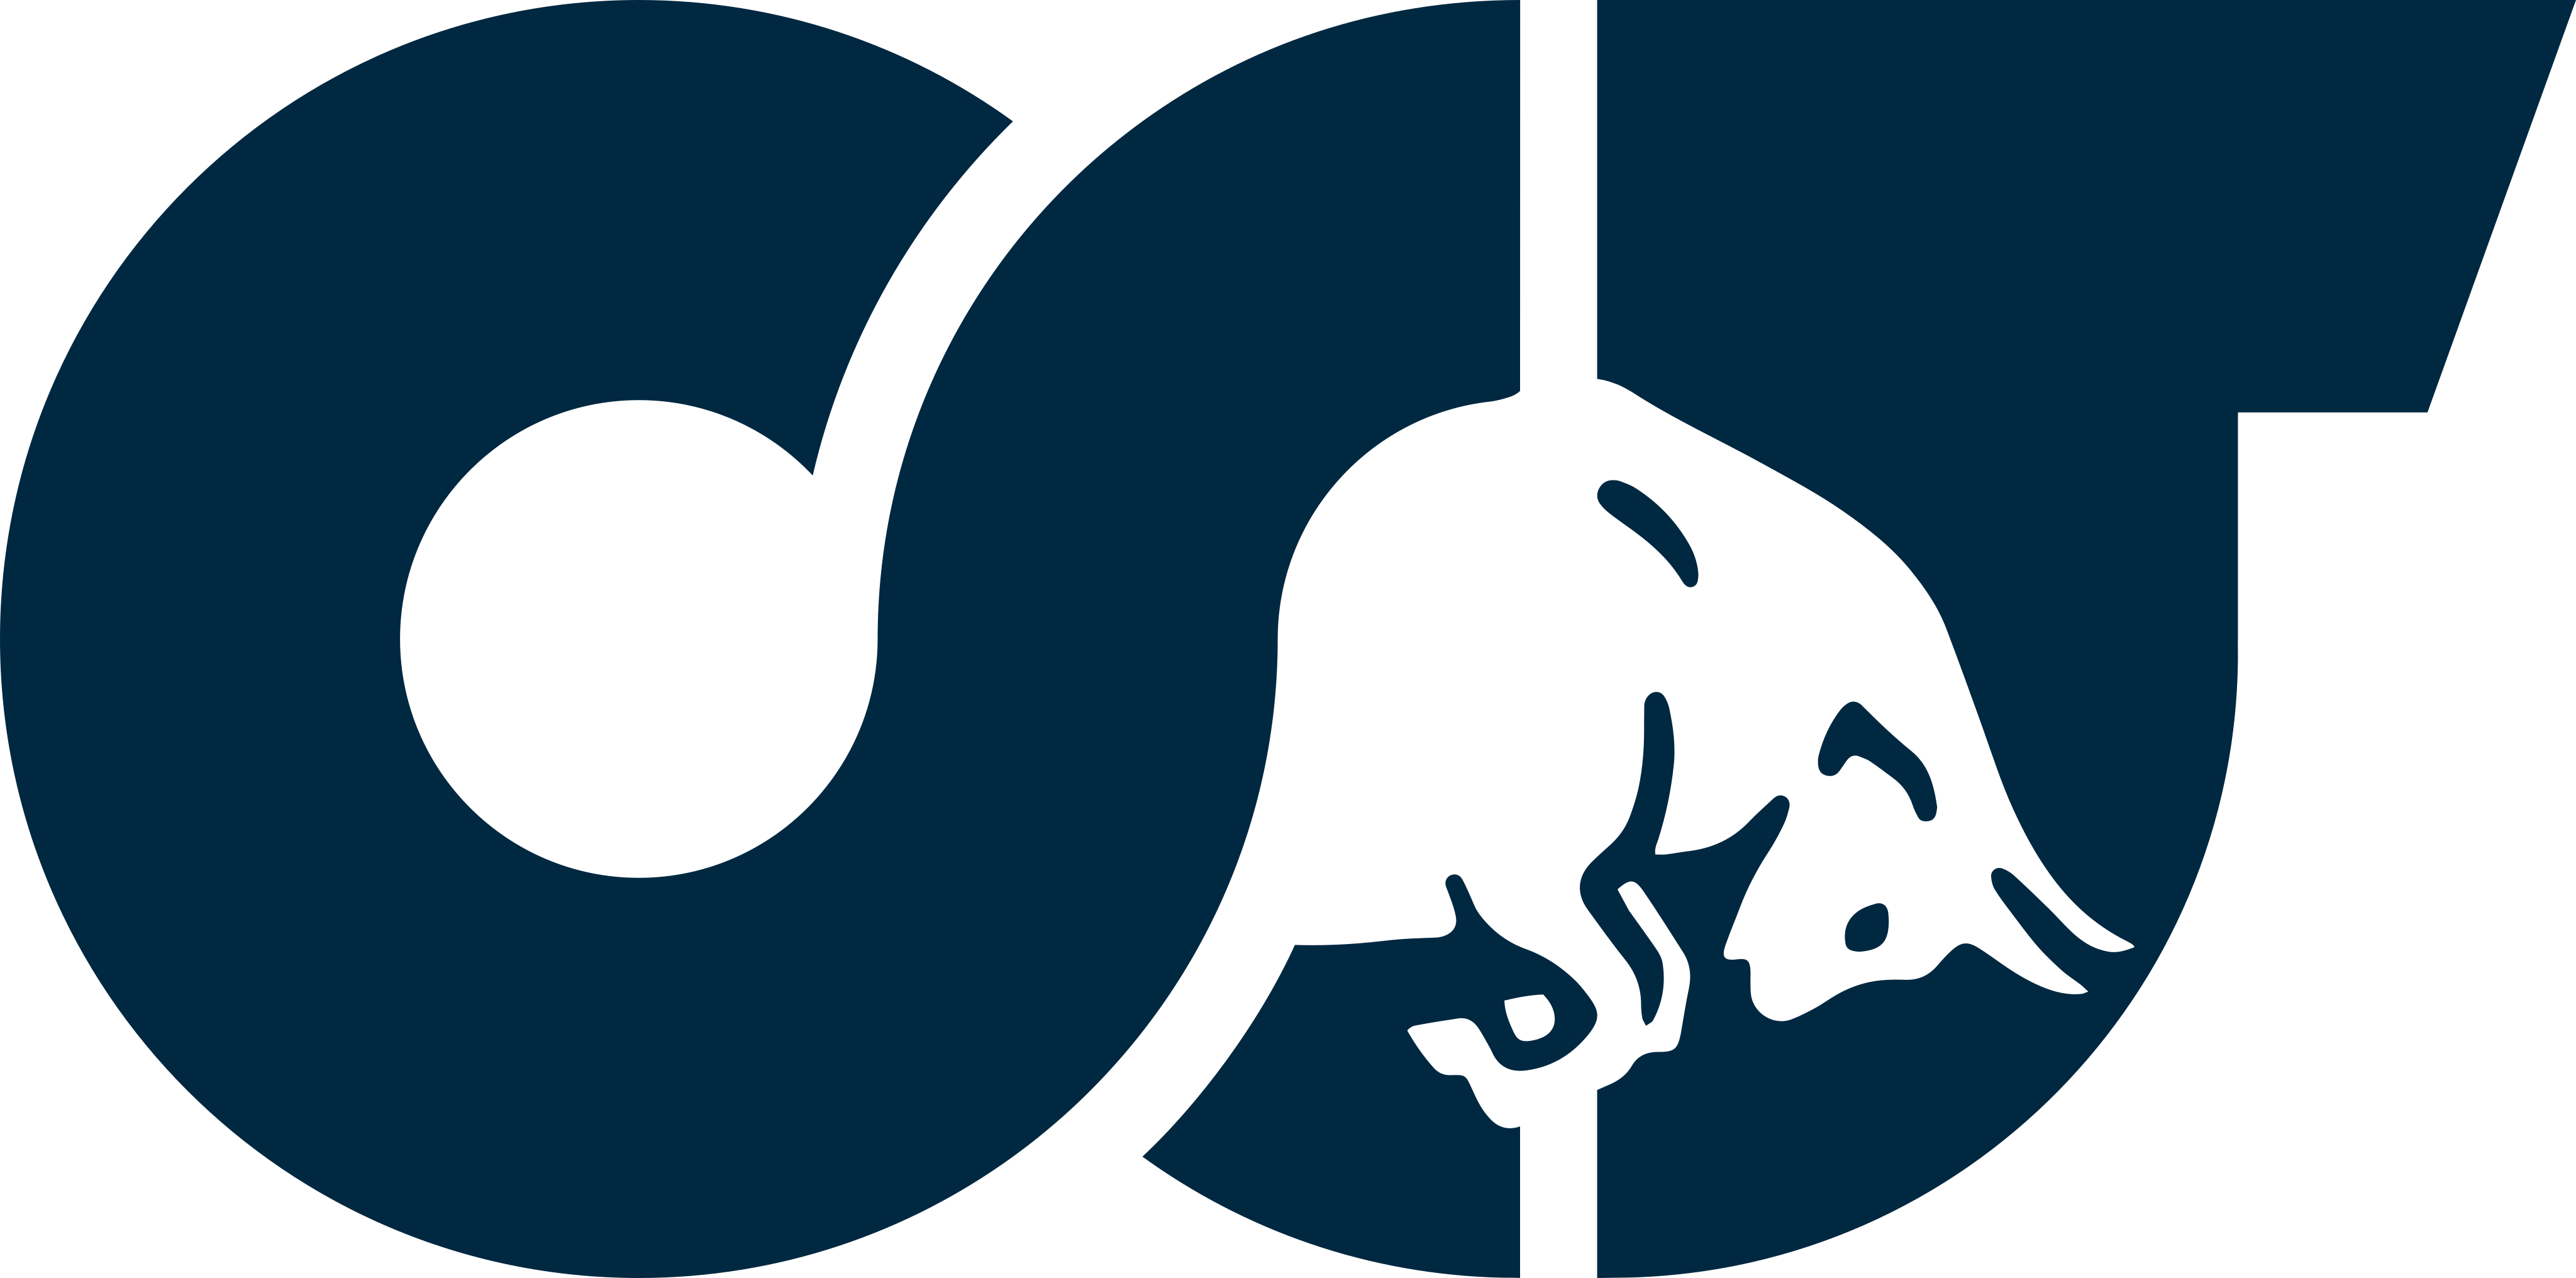 alphatauri logo 1 - Scuderia AlphaTauri Logo